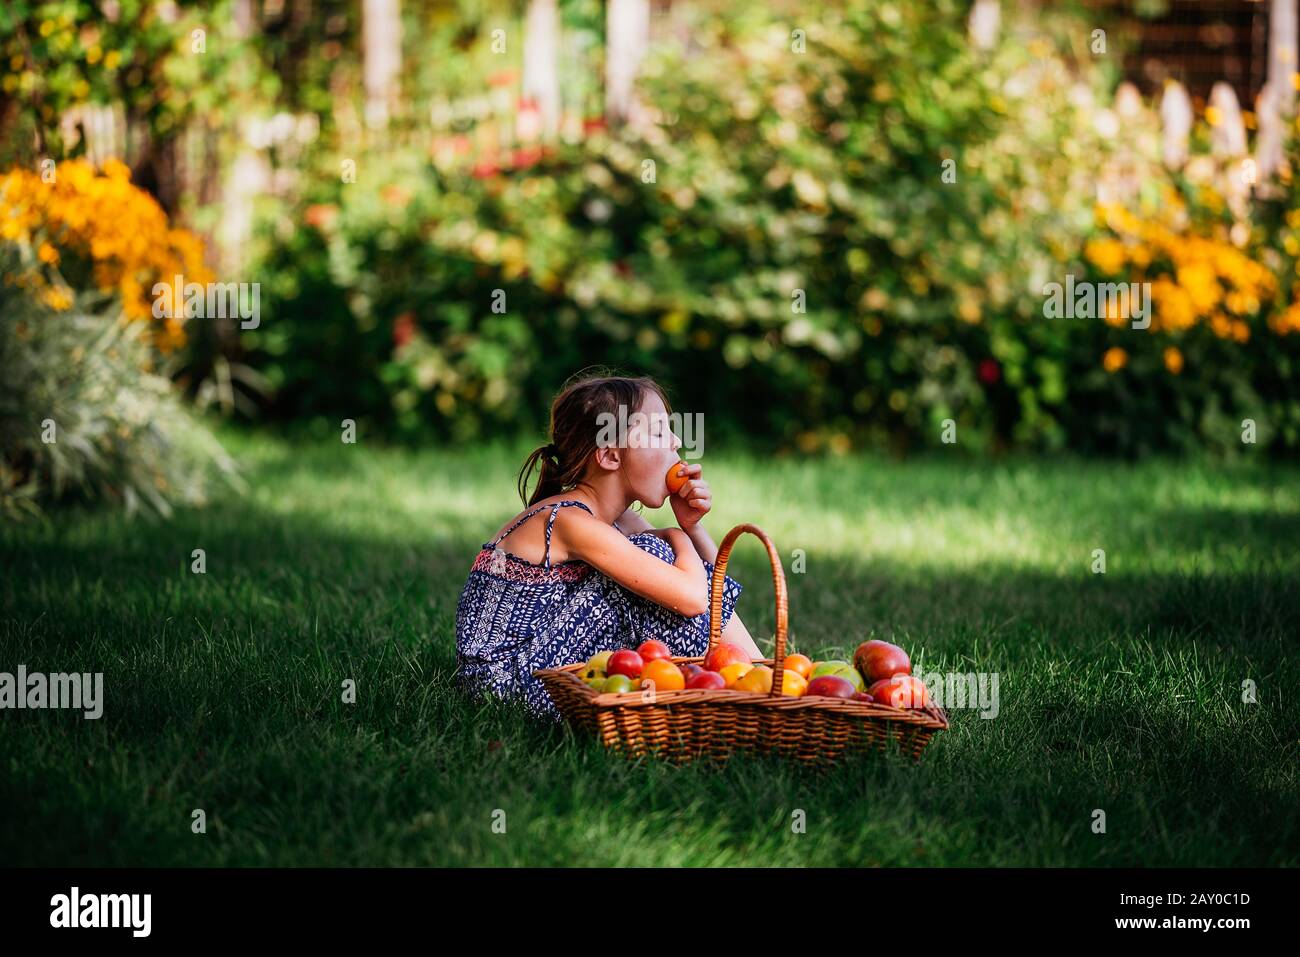 Mädchen, die eine Tomate in einem Garten neben einem Korb mit frischen Tomaten essen, USA Stockfoto